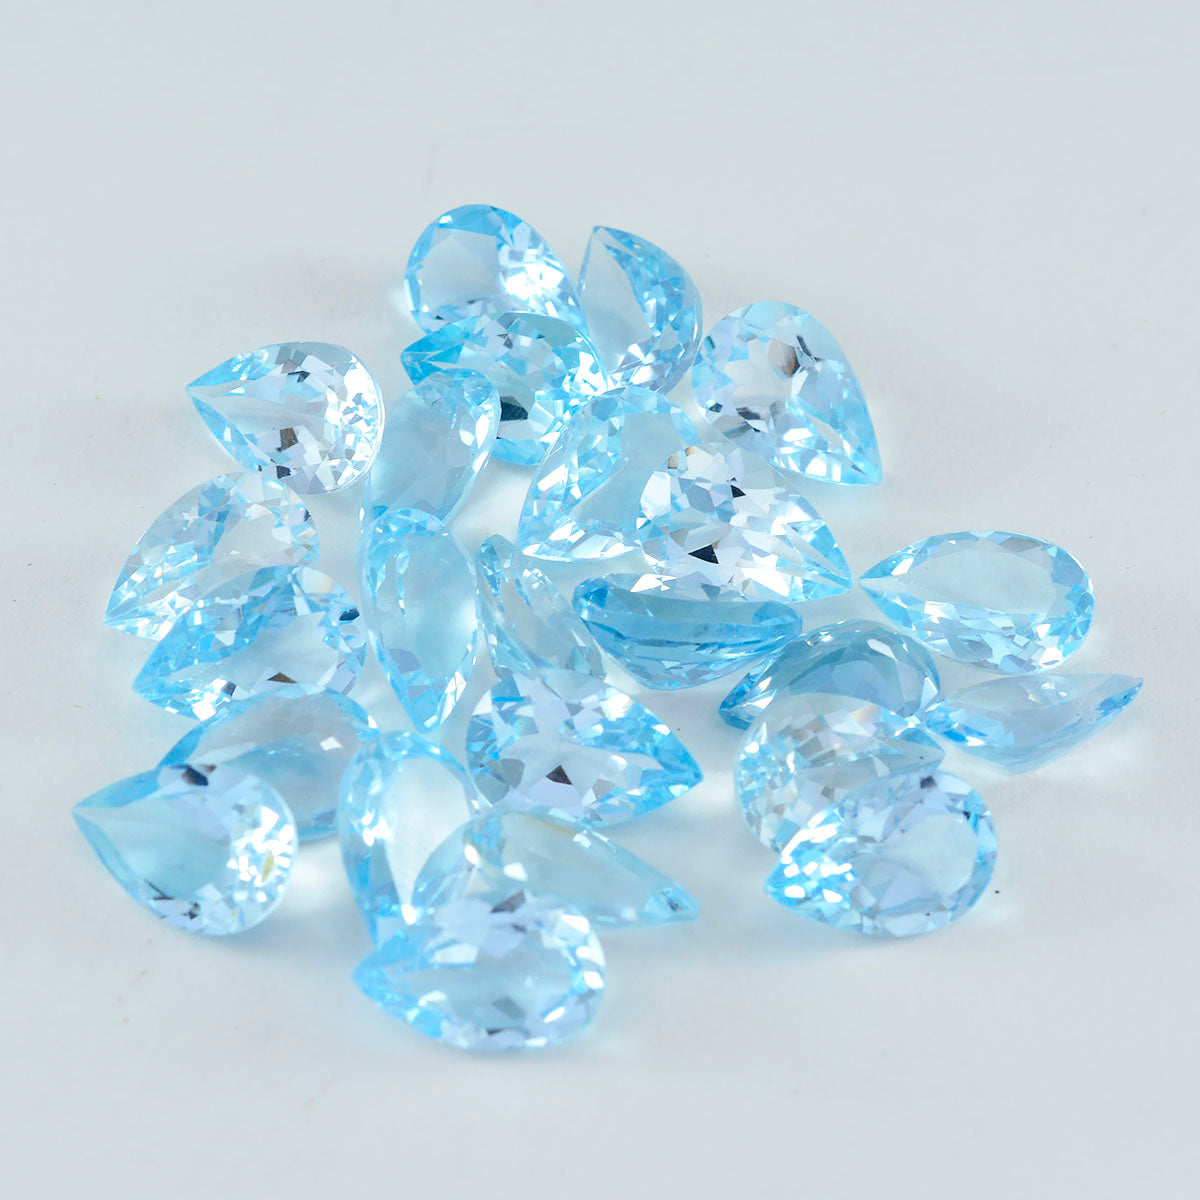 riyogems 1 st naturlig blå topas fasetterad 5x7 mm päronform utmärkt kvalitet lös pärla